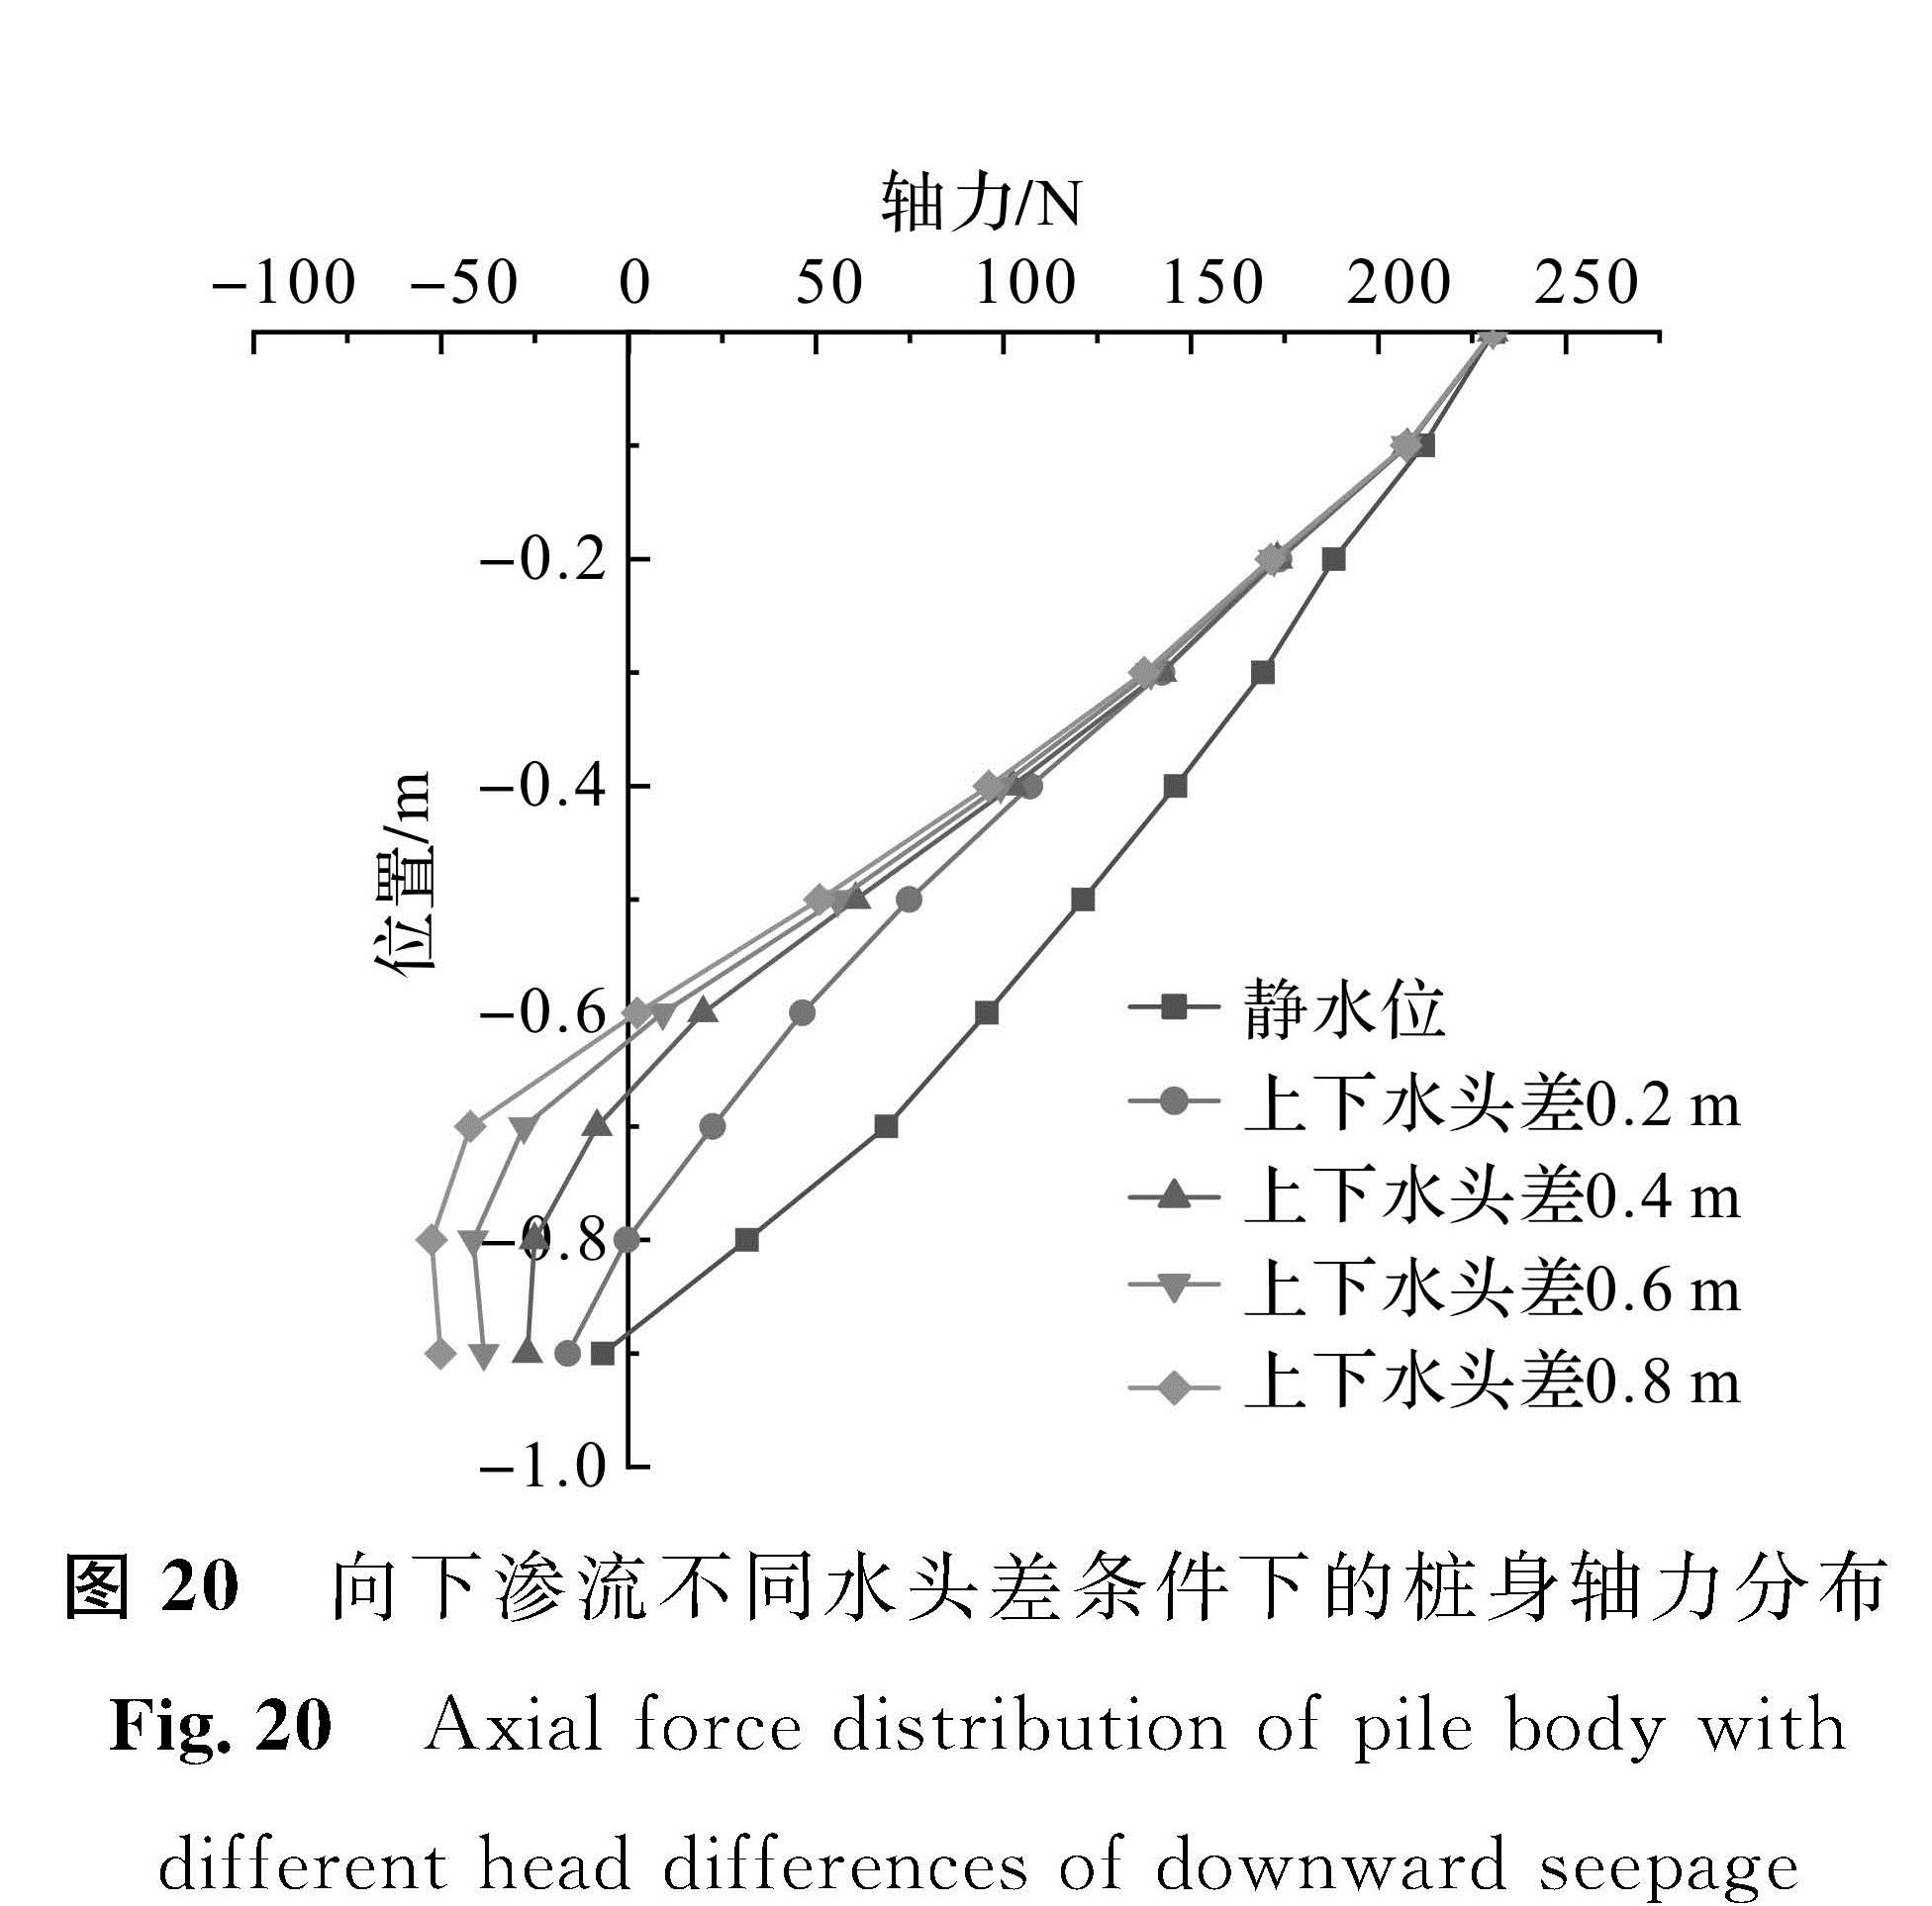 图 20 向下渗流不同水头差条件下的桩身轴力分布<br/>Fig.20 Axial force distribution of pile body with different head differences of downward seepage